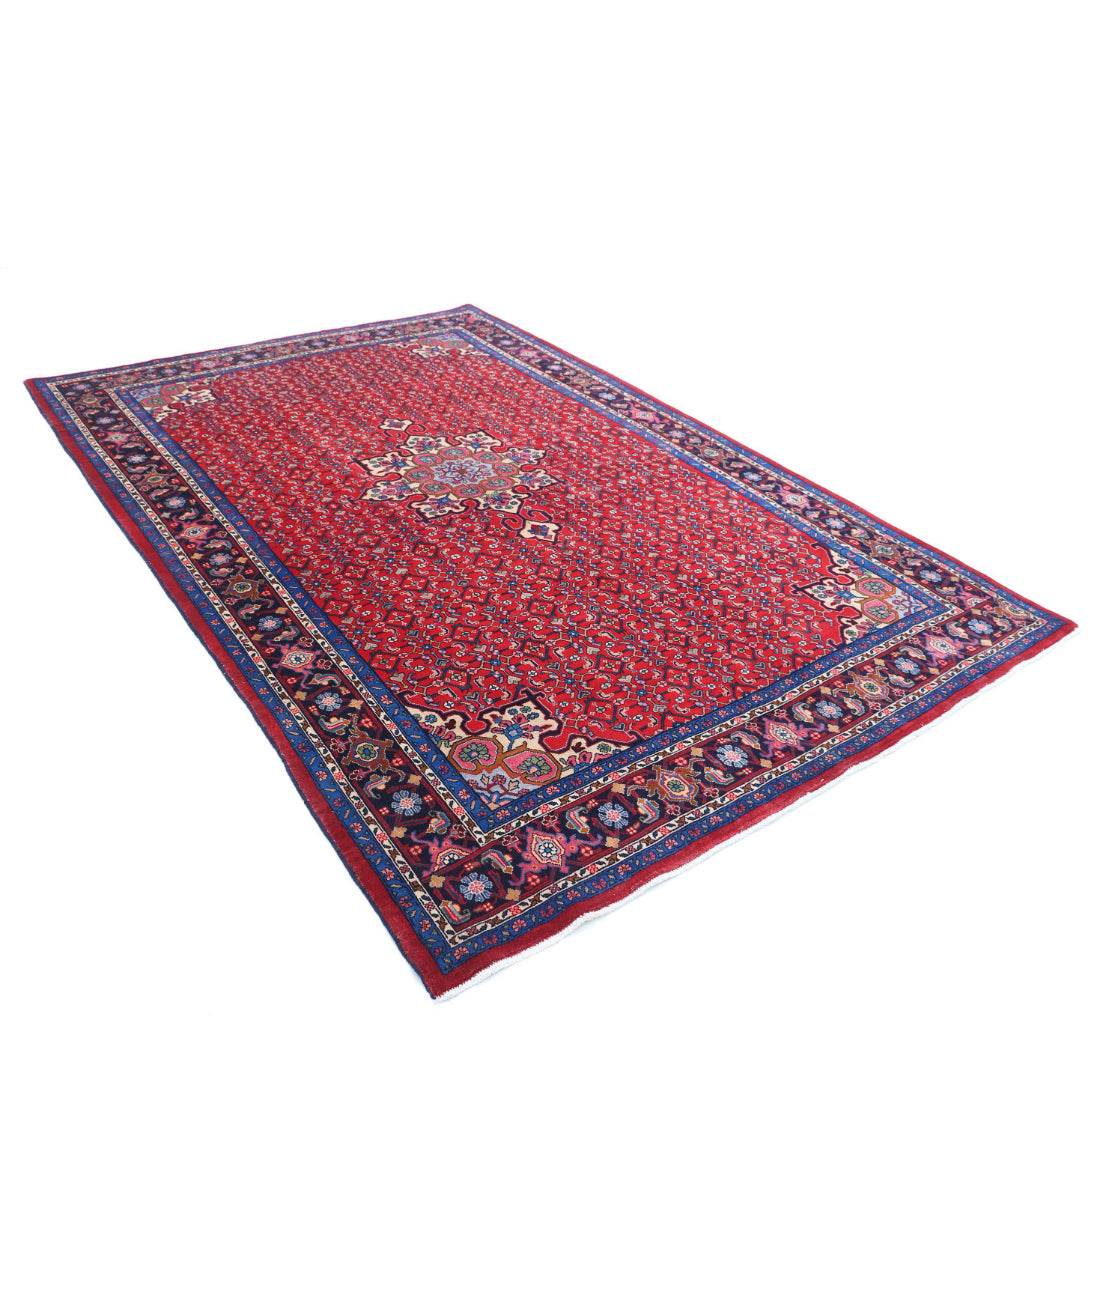 Hand Knotted Persian Bijar Wool Rug - 6'5'' x 9'9'' 6'5'' x 9'9'' (193 X 293) / Red / Blue